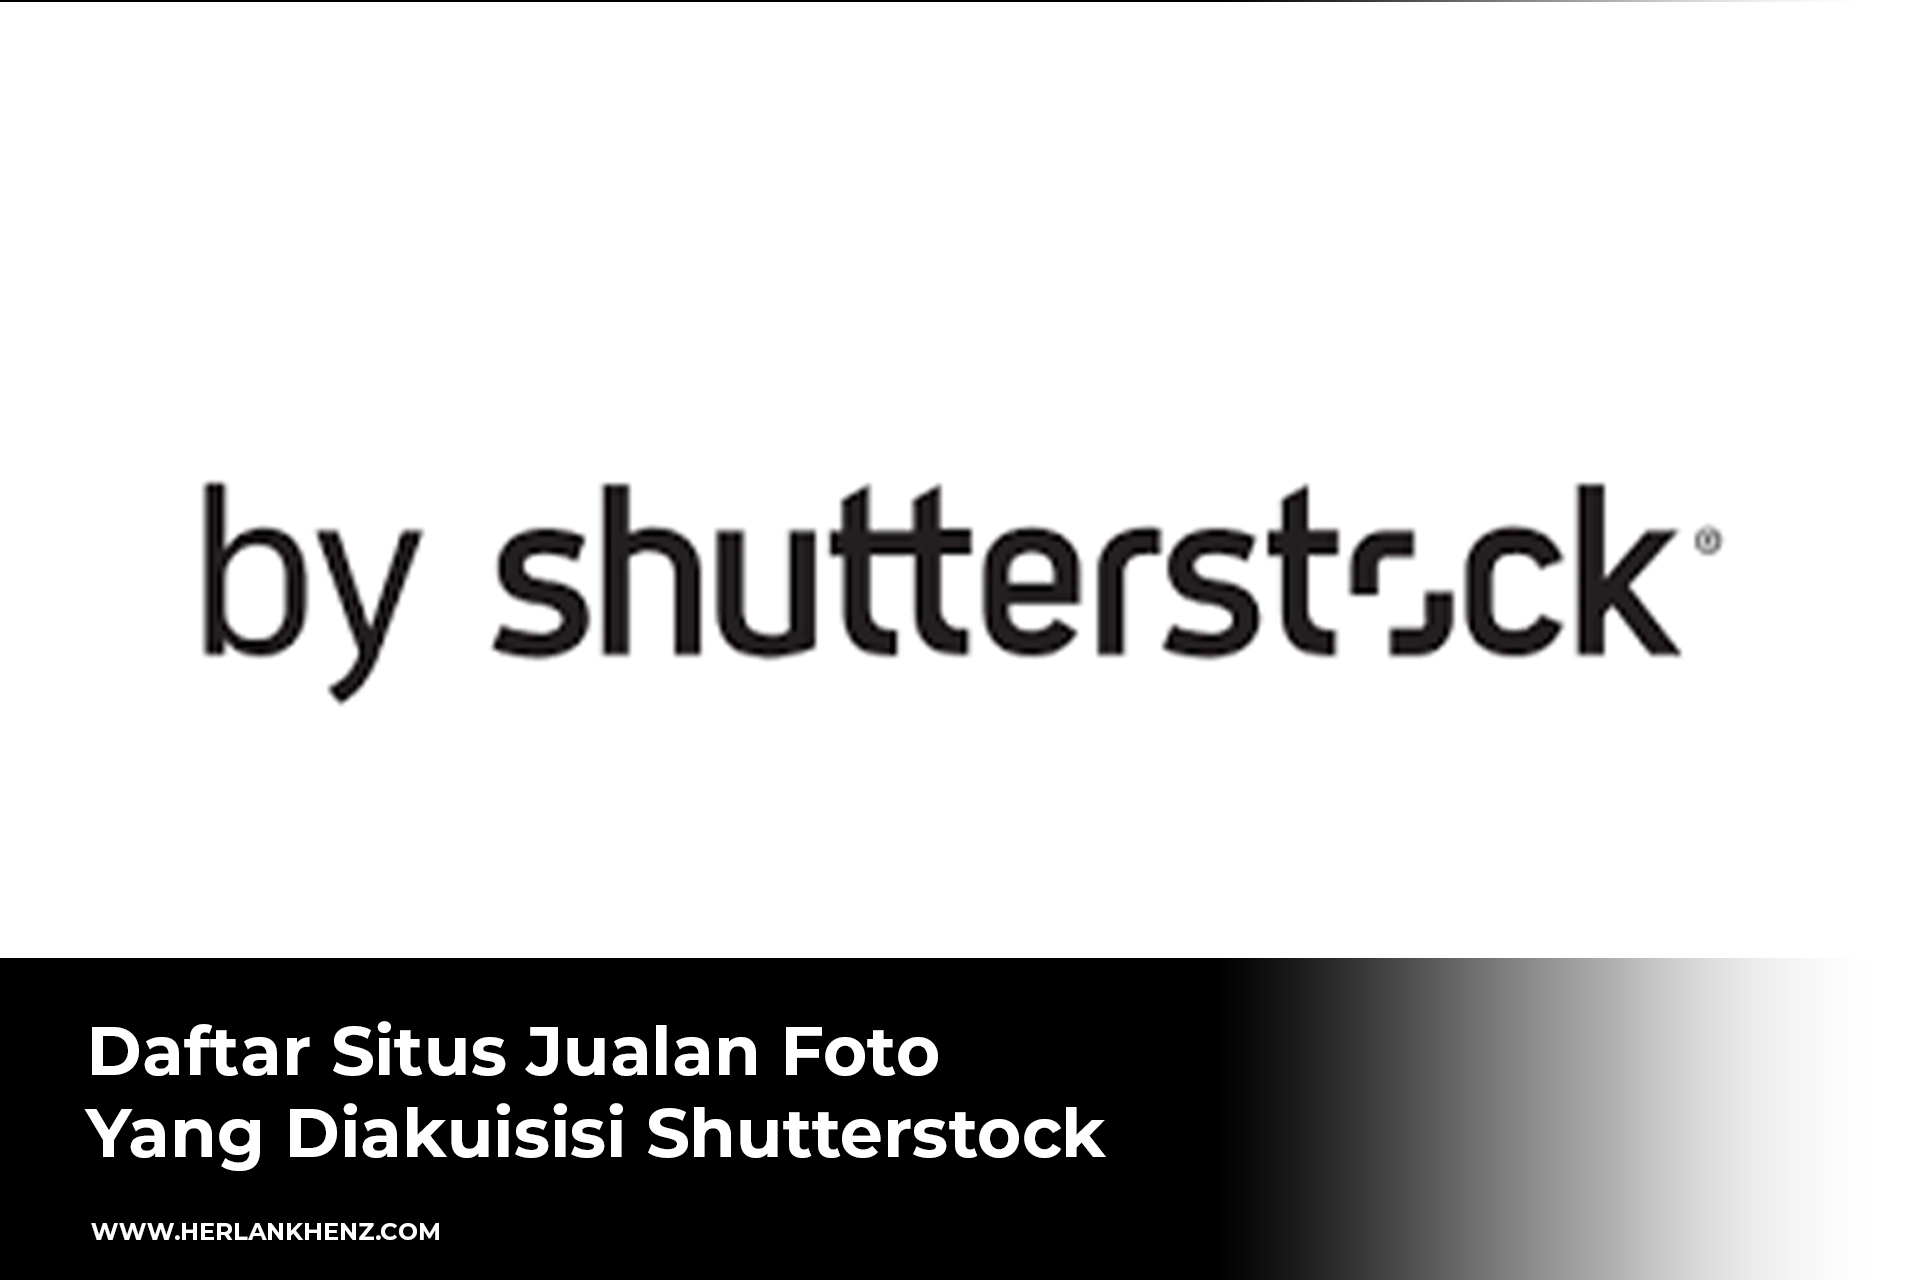 Elenco dei siti di vendita di foto acquisiti da Shutterstock